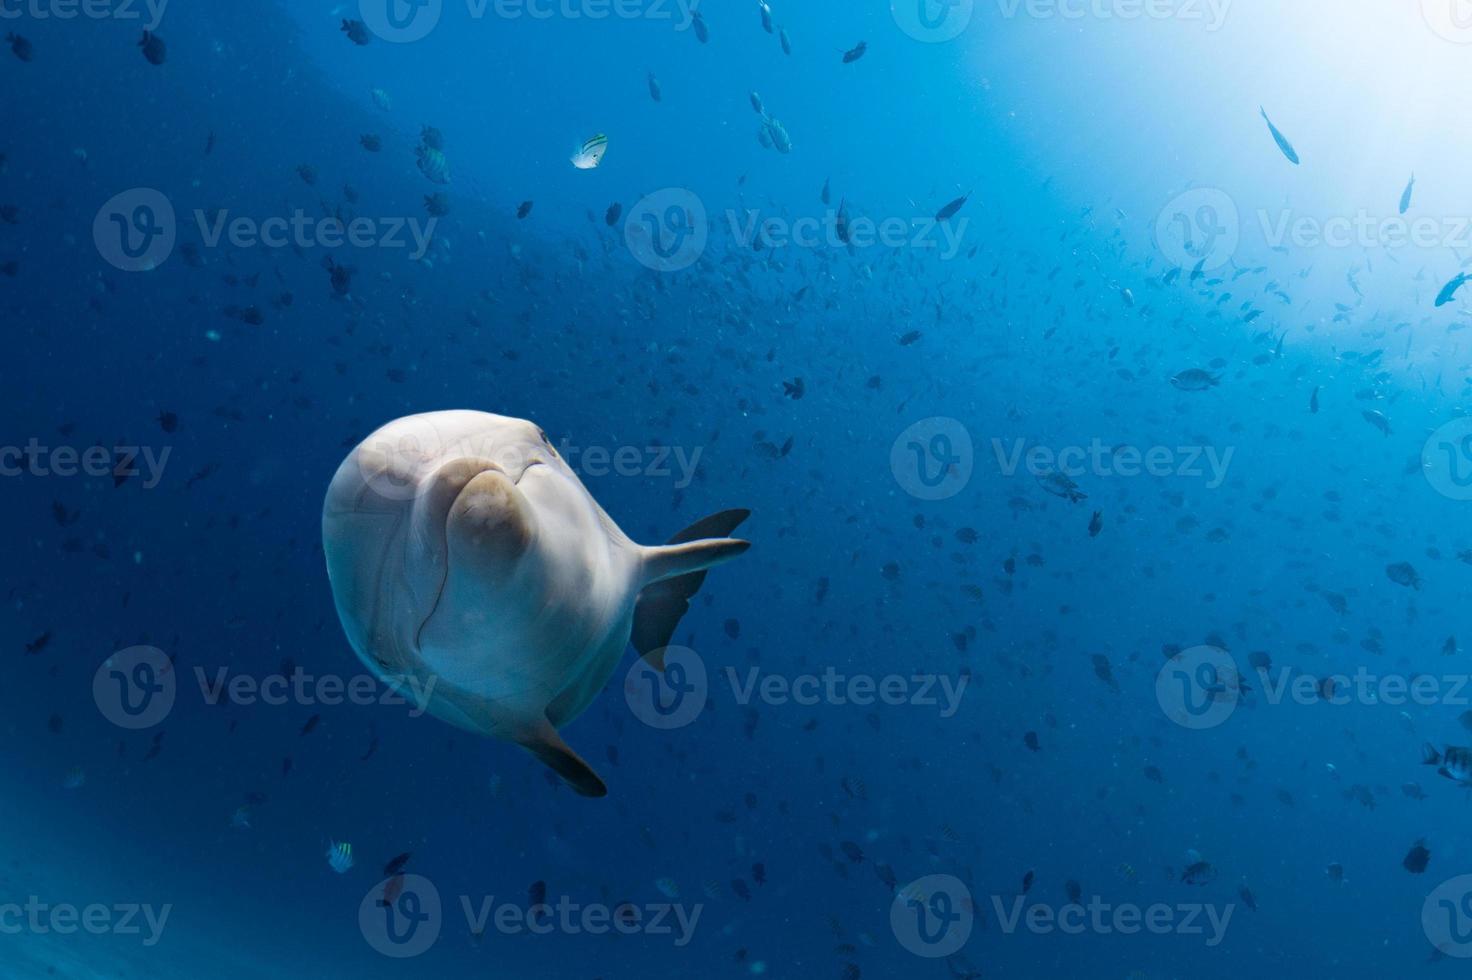 delfin under vattnet på hav bakgrund foto